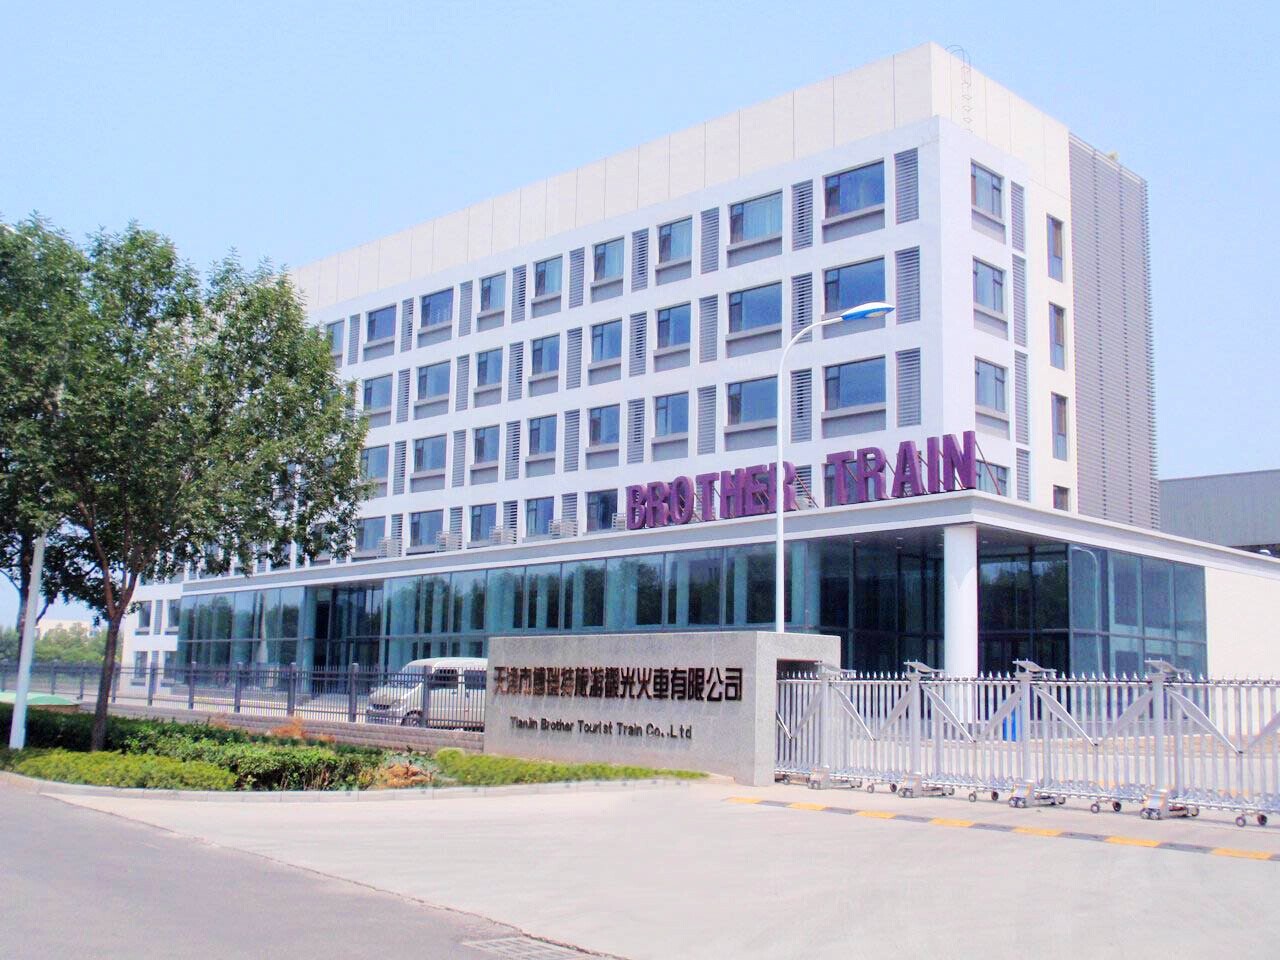 天津市博瑞特旅游观光火车有限公司办公楼